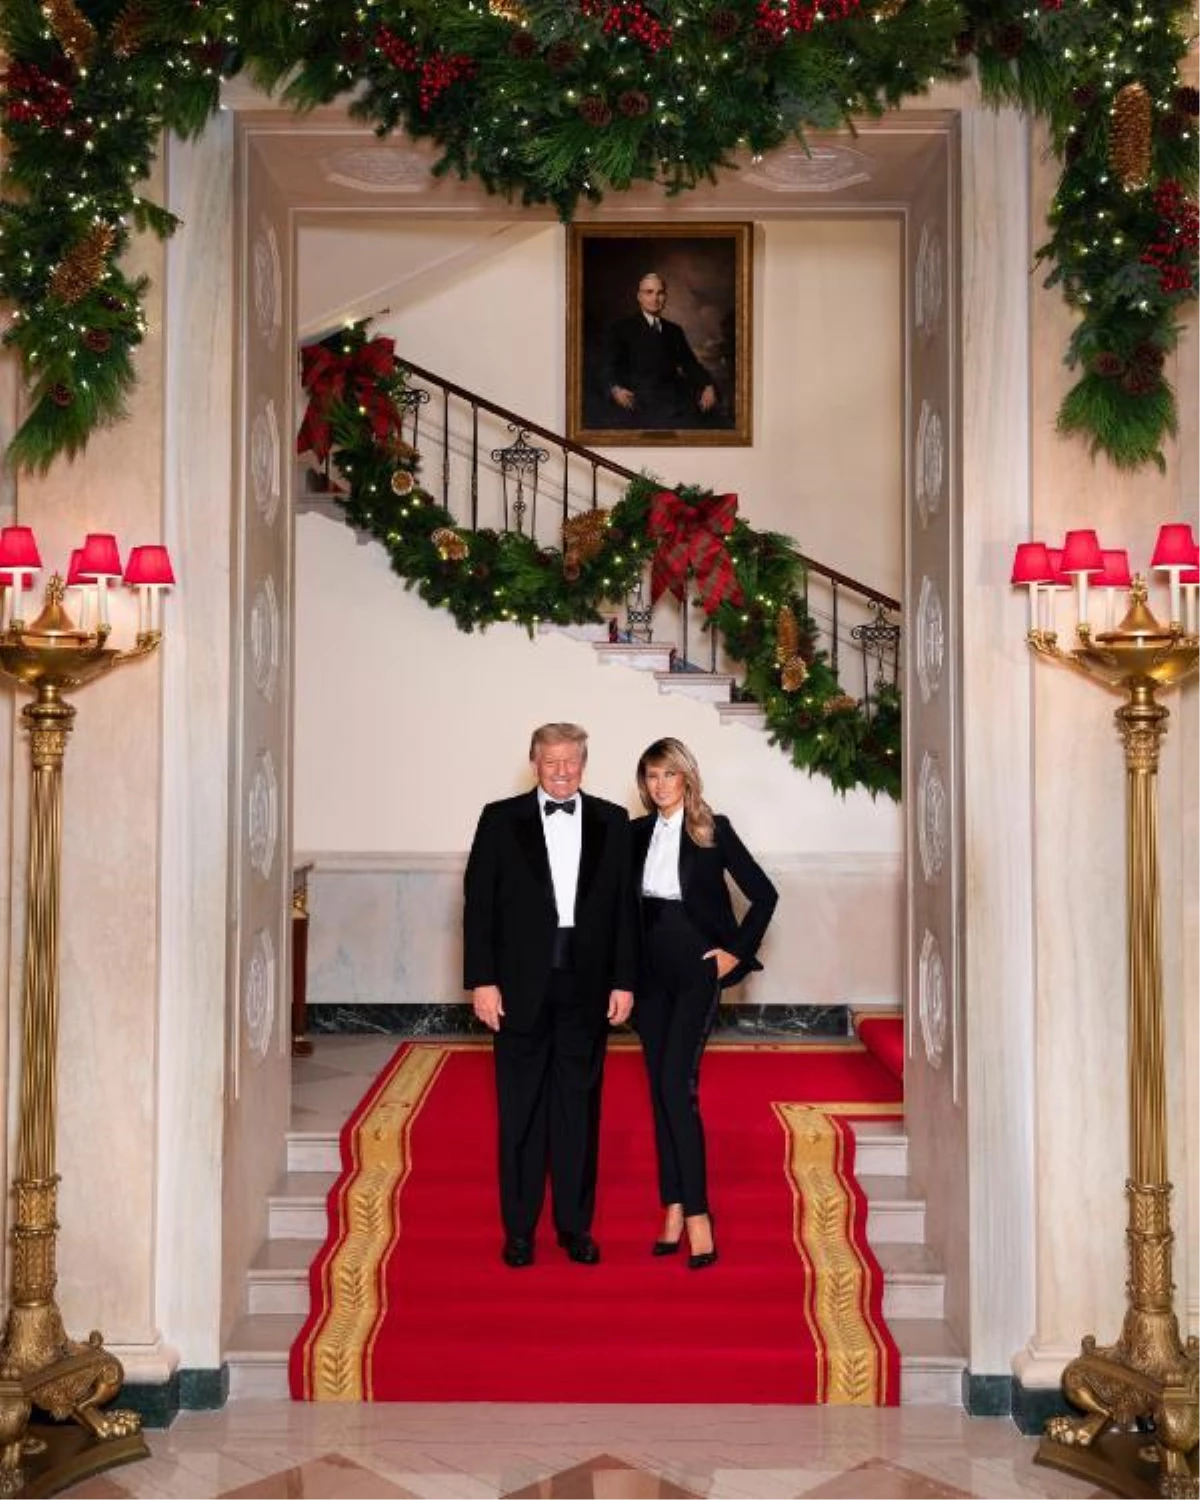 Trump çiftinden smokinli Noel pozu